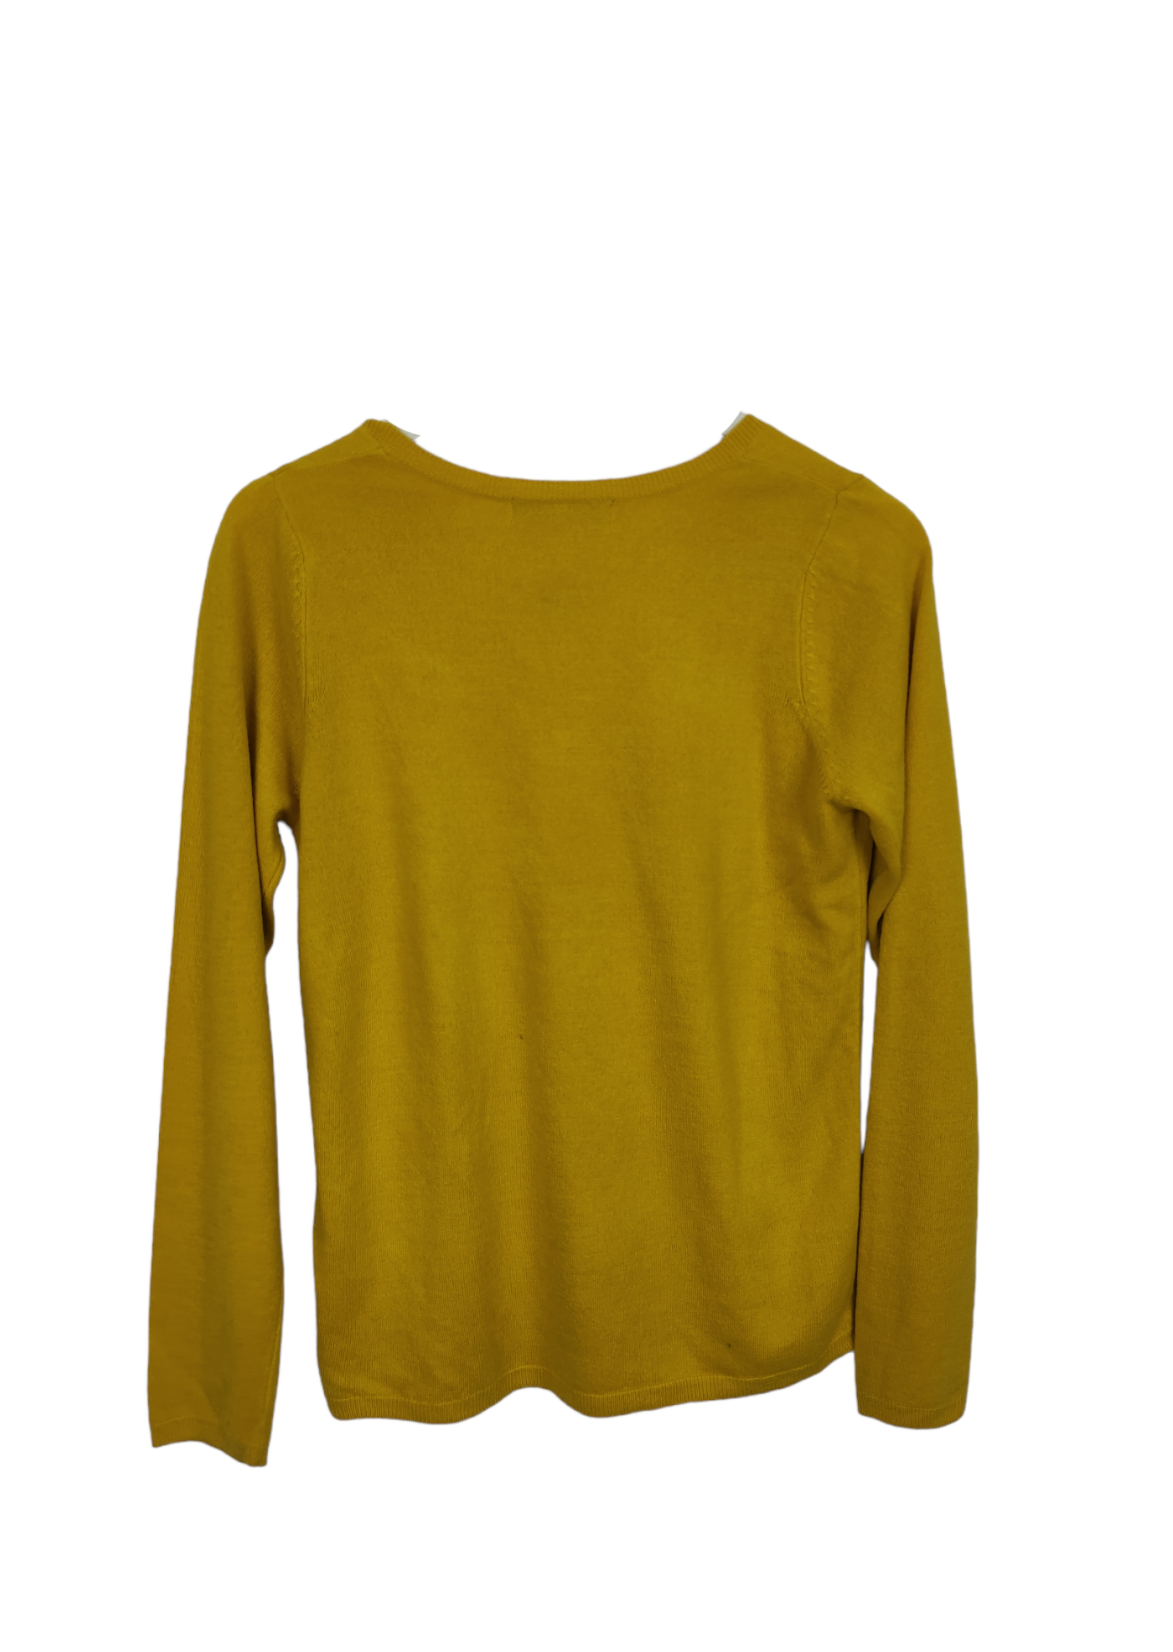 Πλεκτή Γυναικεία Μπλούζα M&S σε Ζωντανό Κίτρινο χρώμα και  V Σχέδιο (Small)